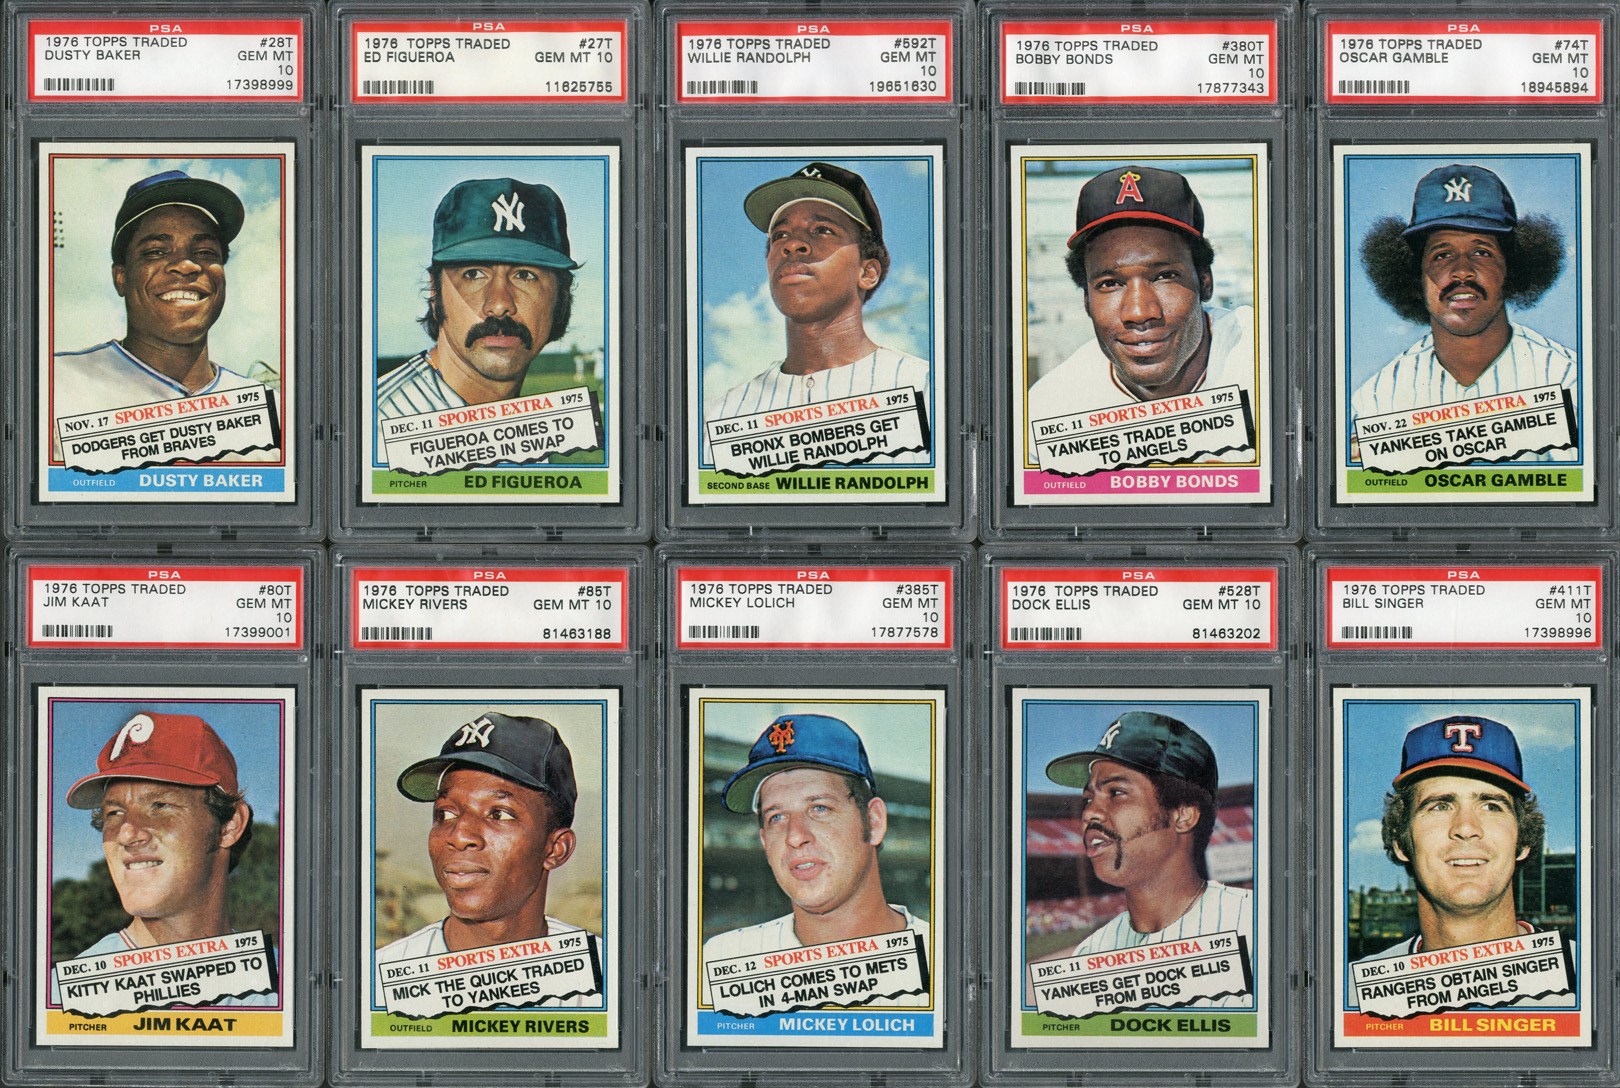 1976 Topps Traded Baseball Near-Complete Graded Set - ALL PSA GEM MINT 10s (31/44)